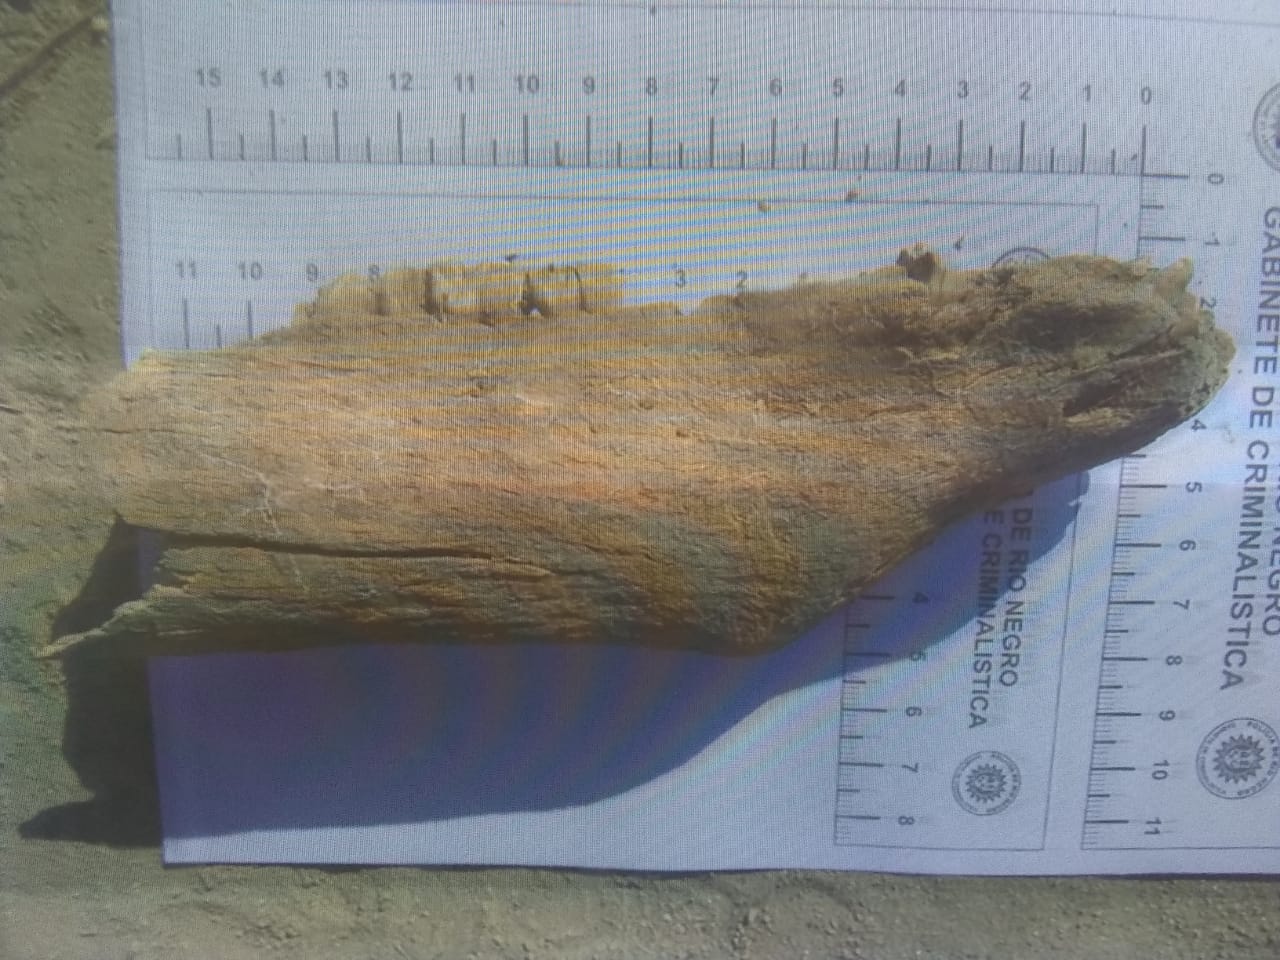 Esta fue "la mandíbula" encontrada en la barda. La familia solicitó que los restos sean sometidos a estudios por parte de los peritos.